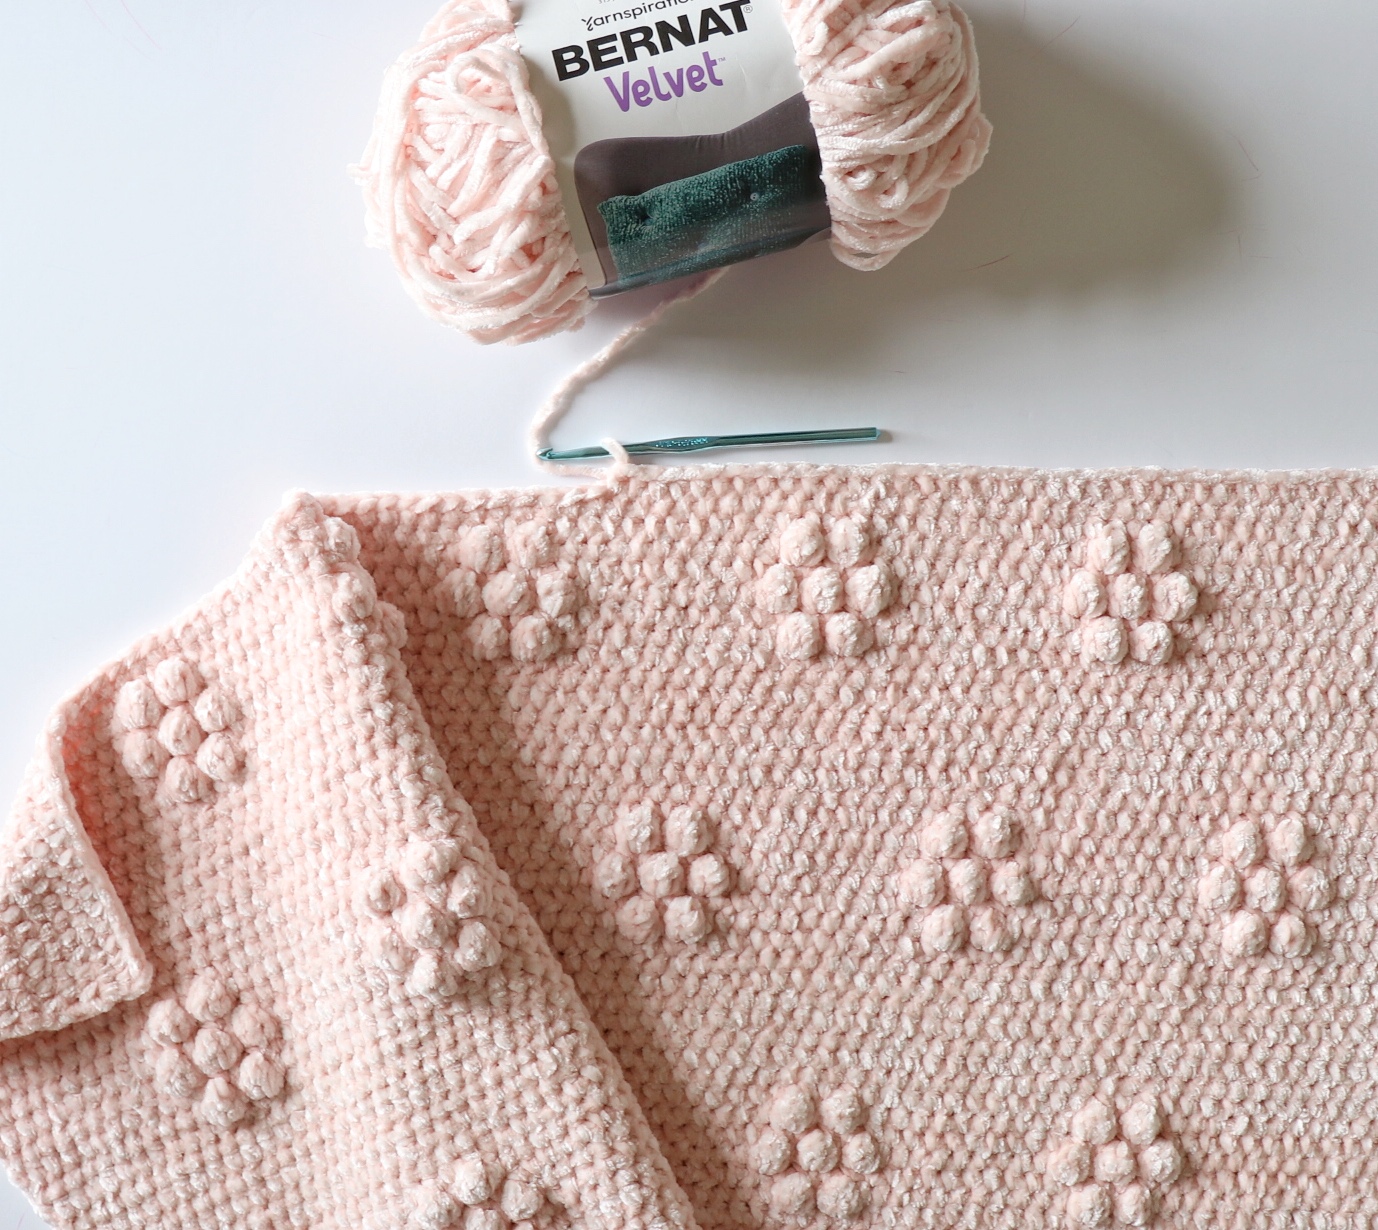 Velvet yarn patterns crochet